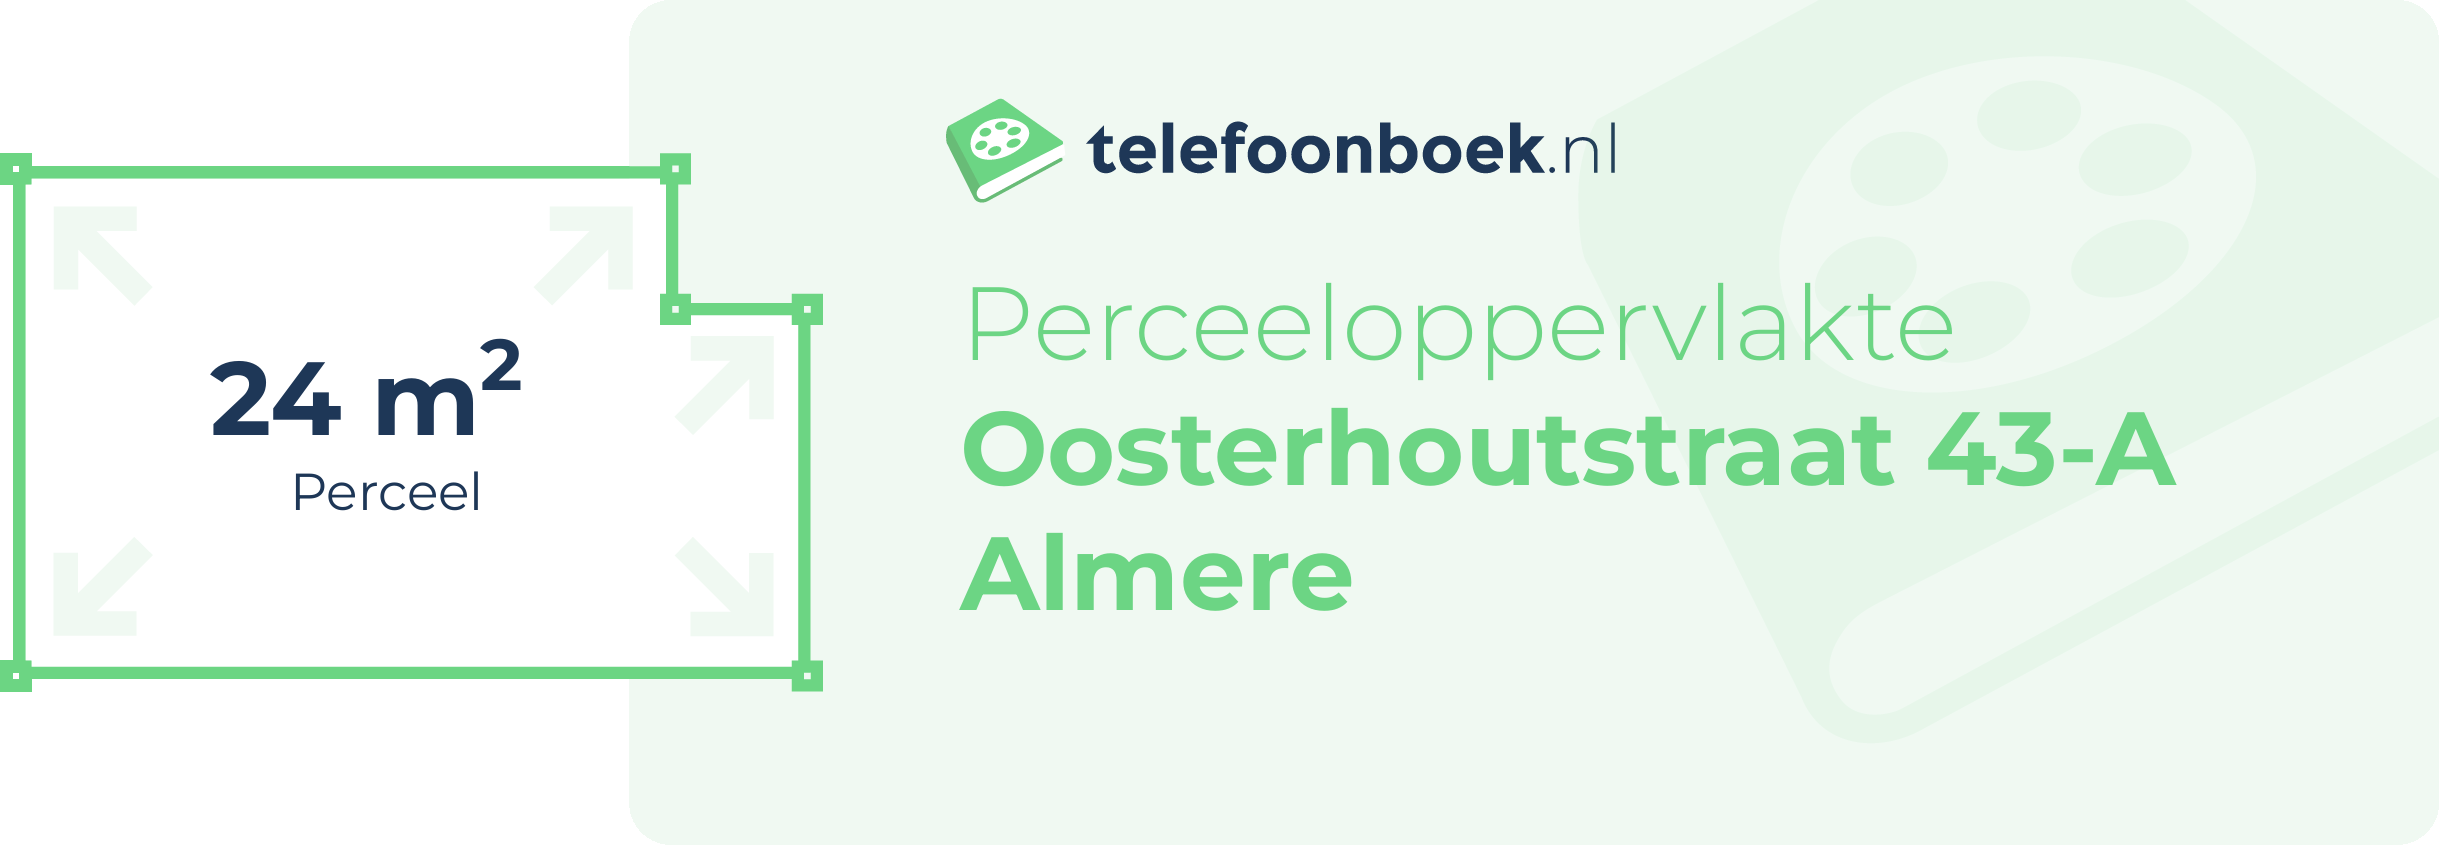 Perceeloppervlakte Oosterhoutstraat 43-A Almere